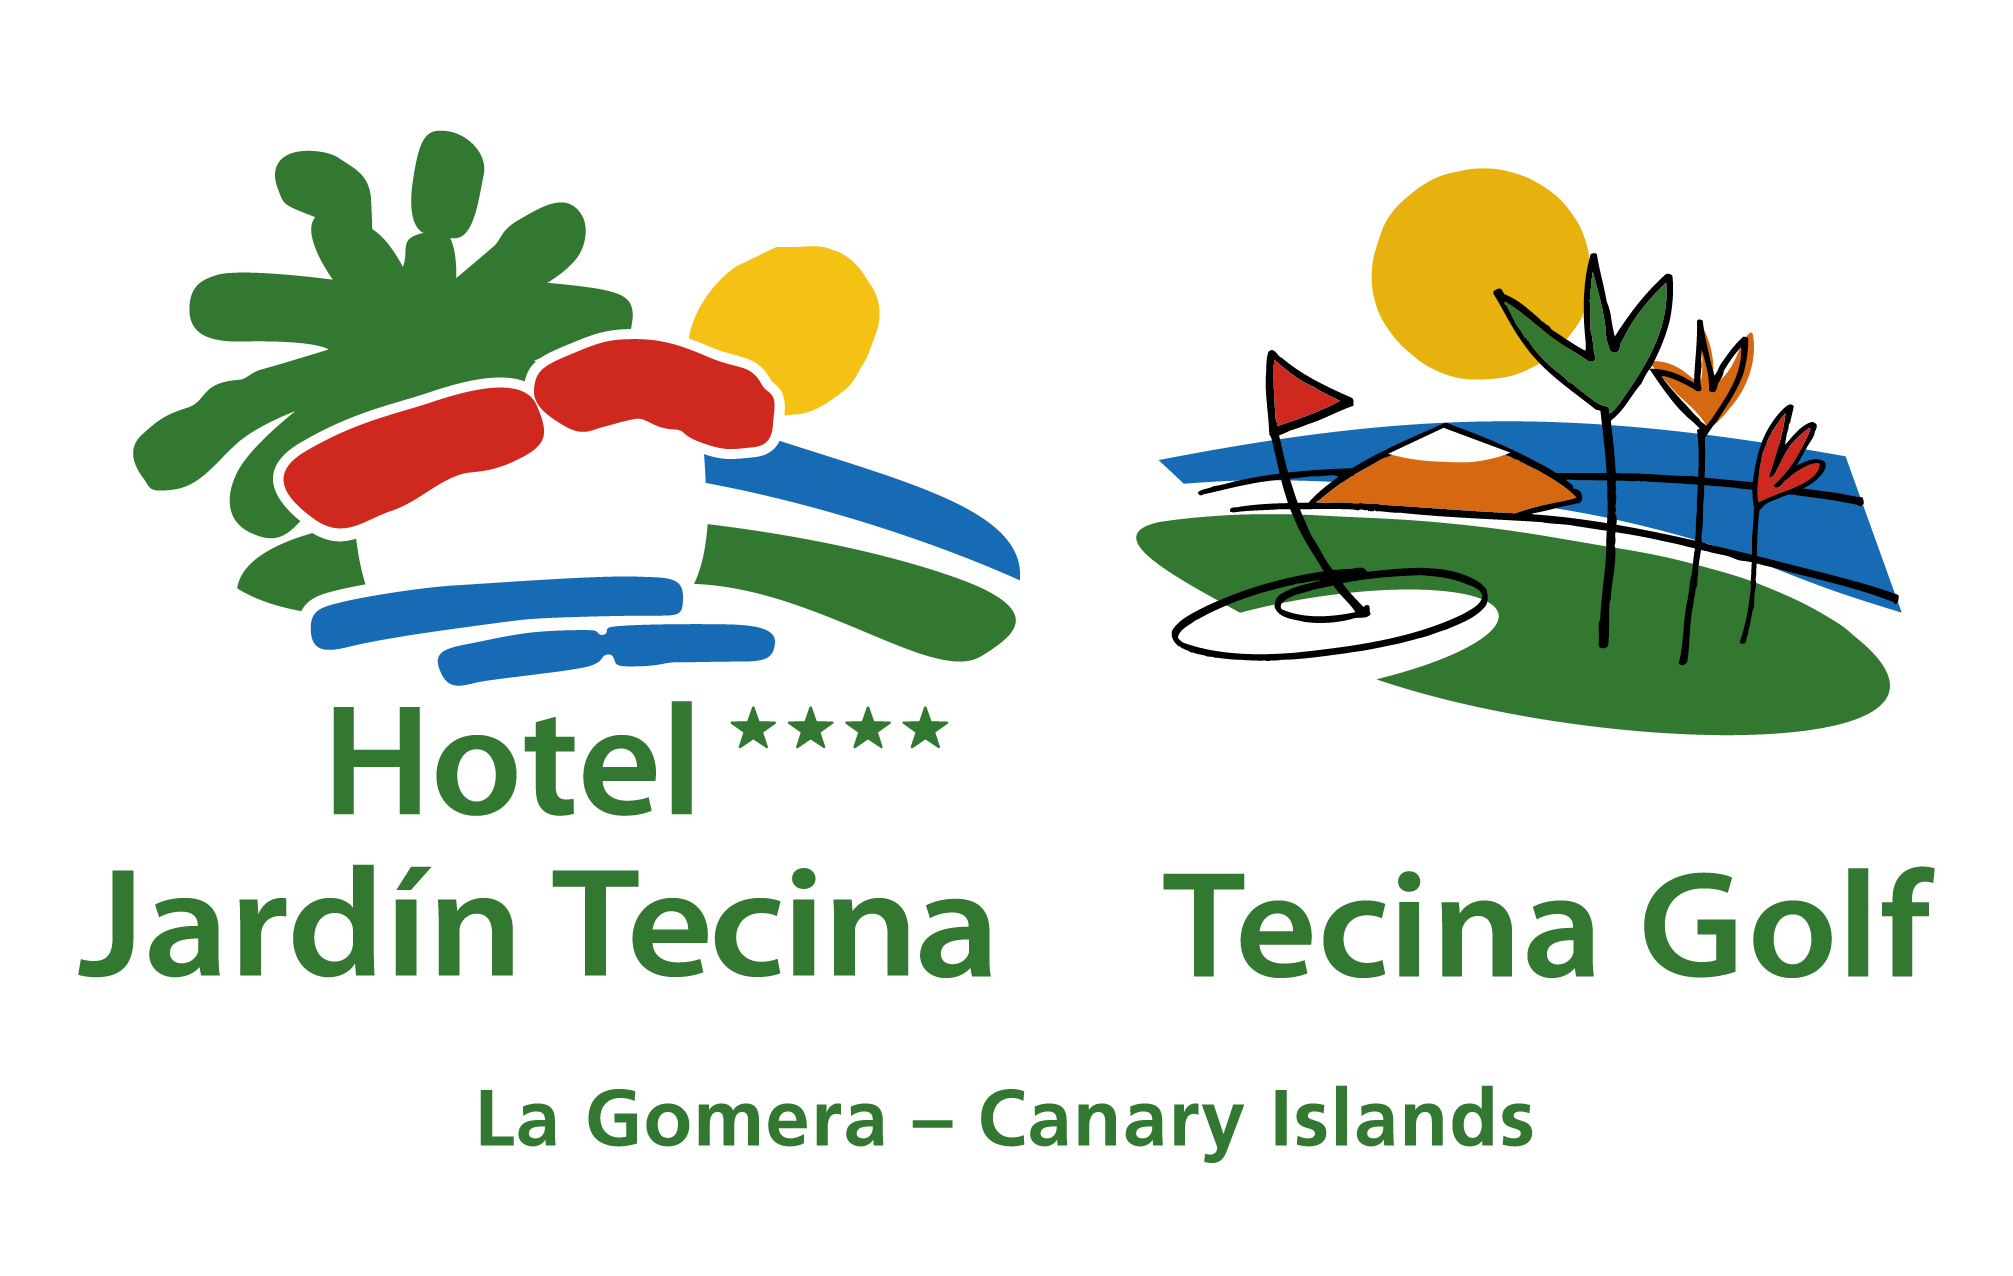 La Gomera Tourist Board